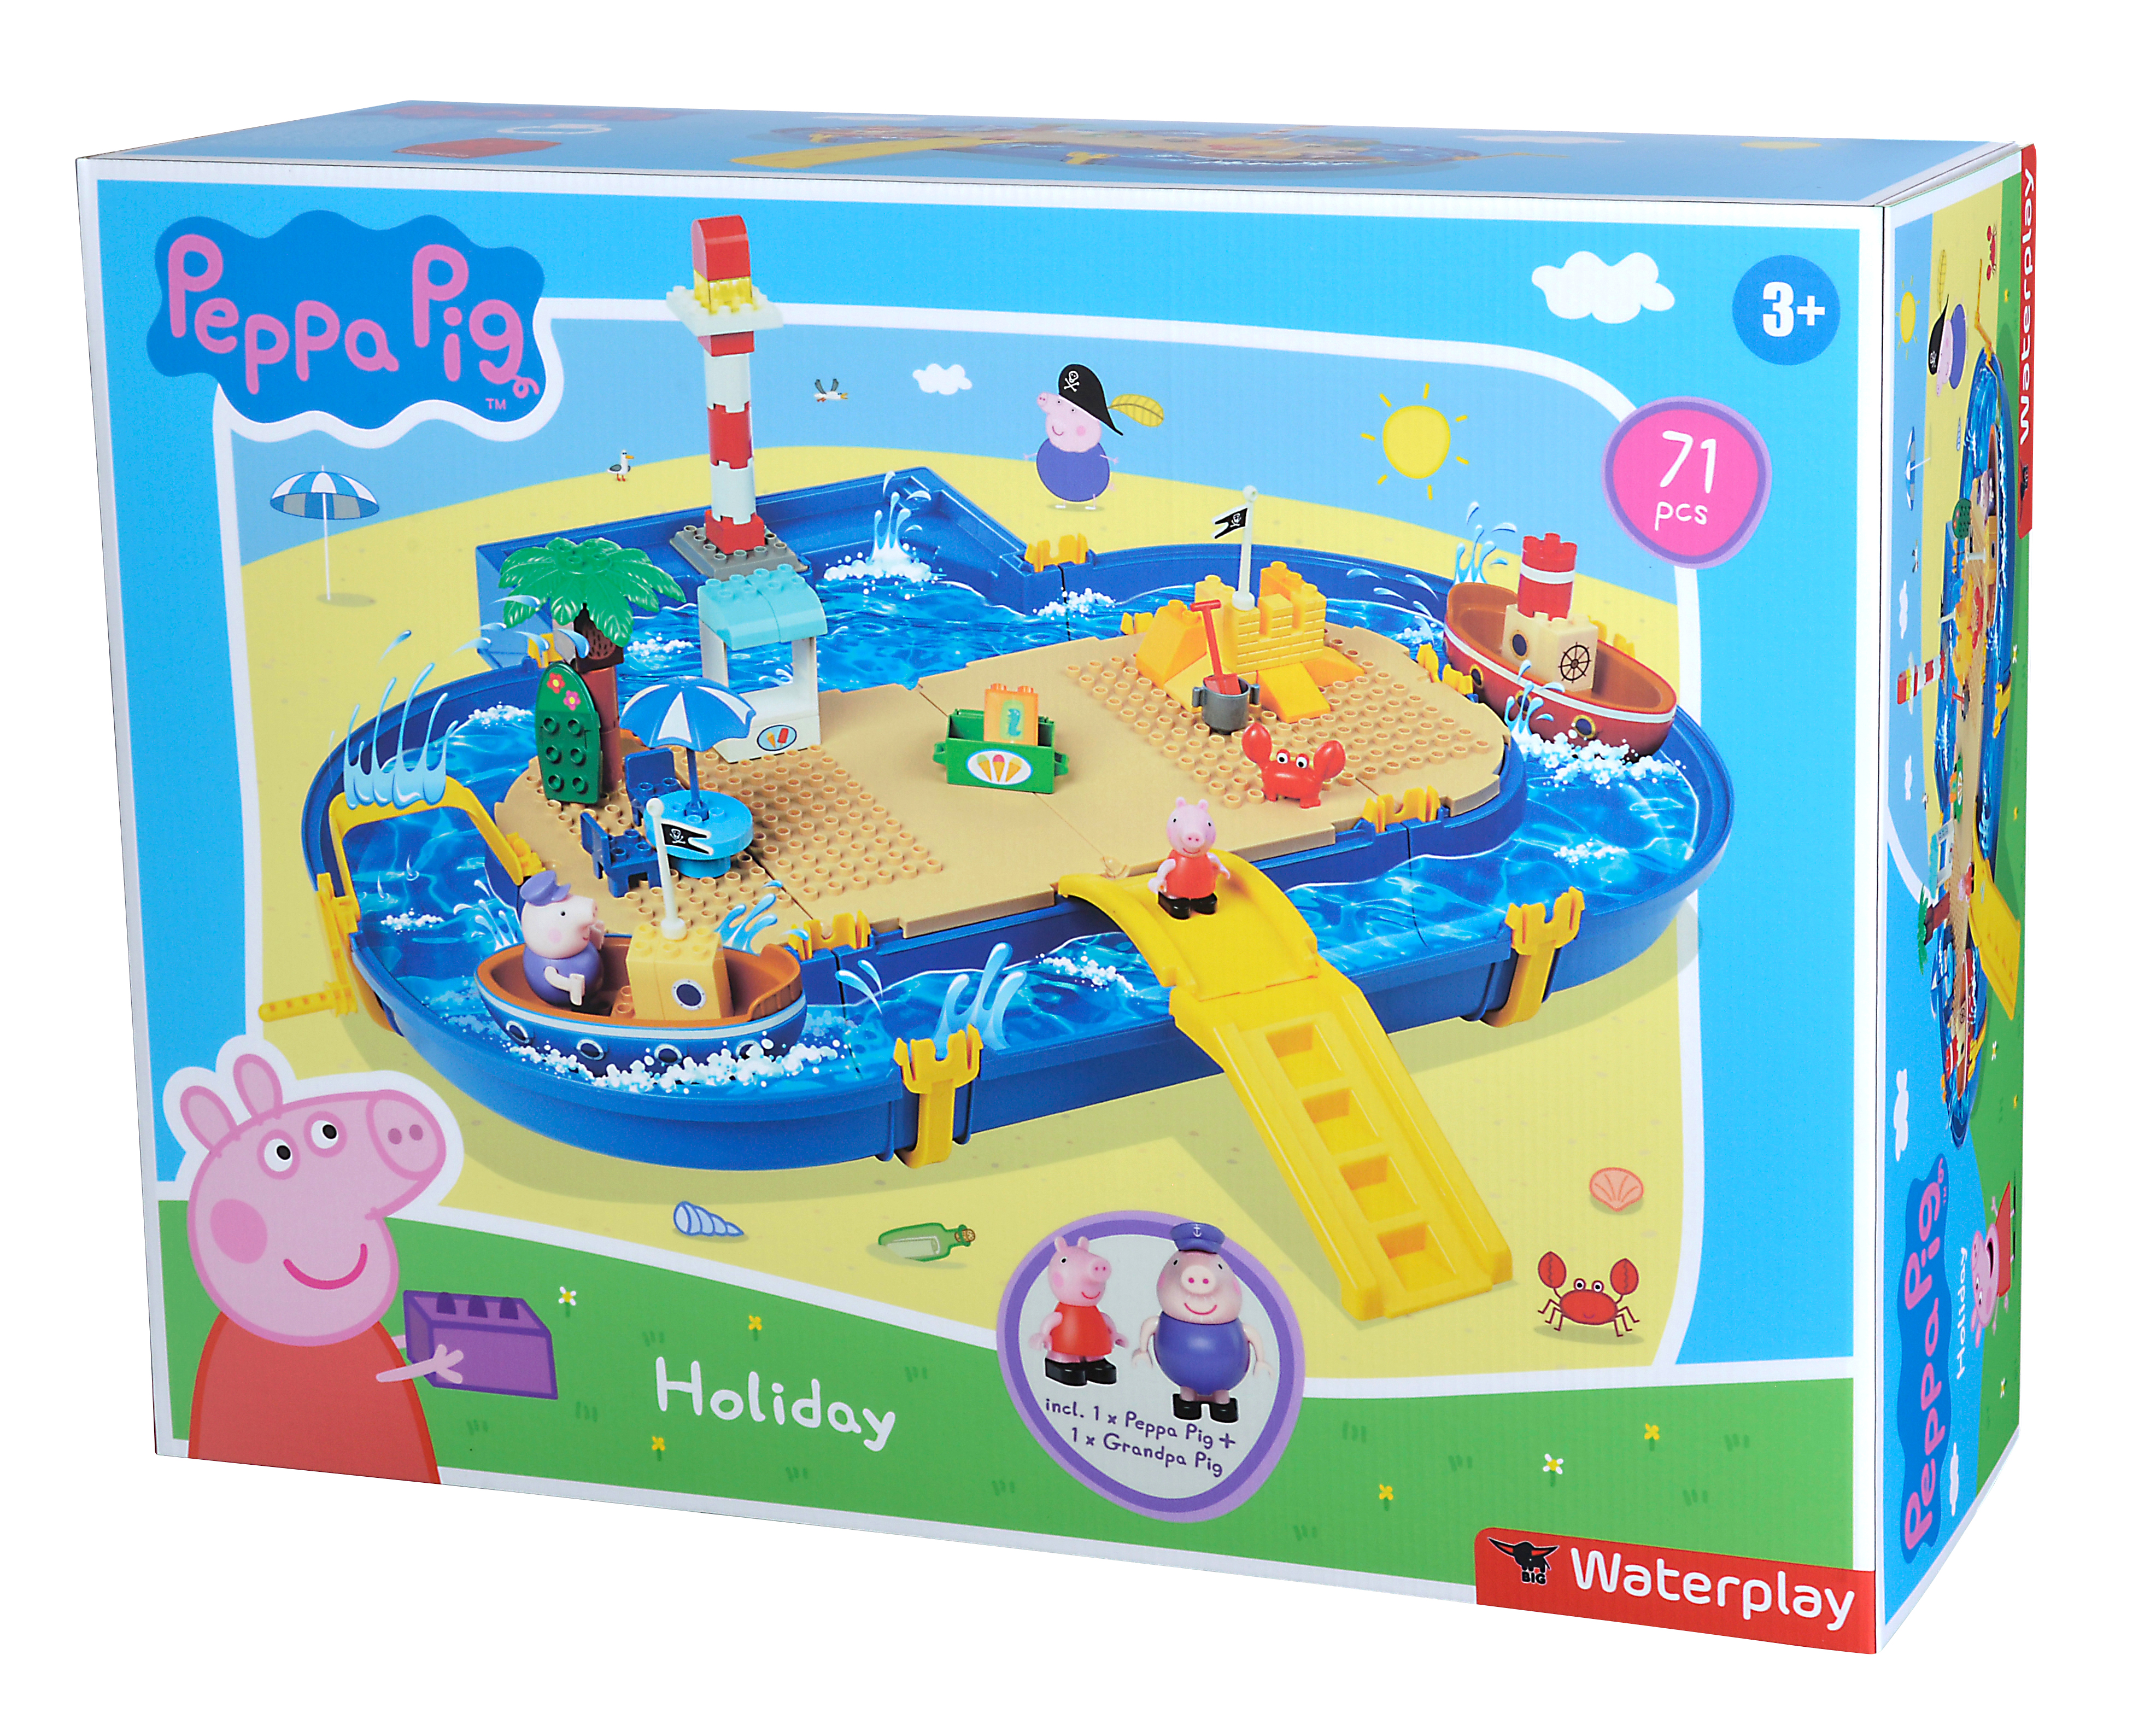 BIG Holiday Peppa Pig Blau Wasserspielset Waterplay